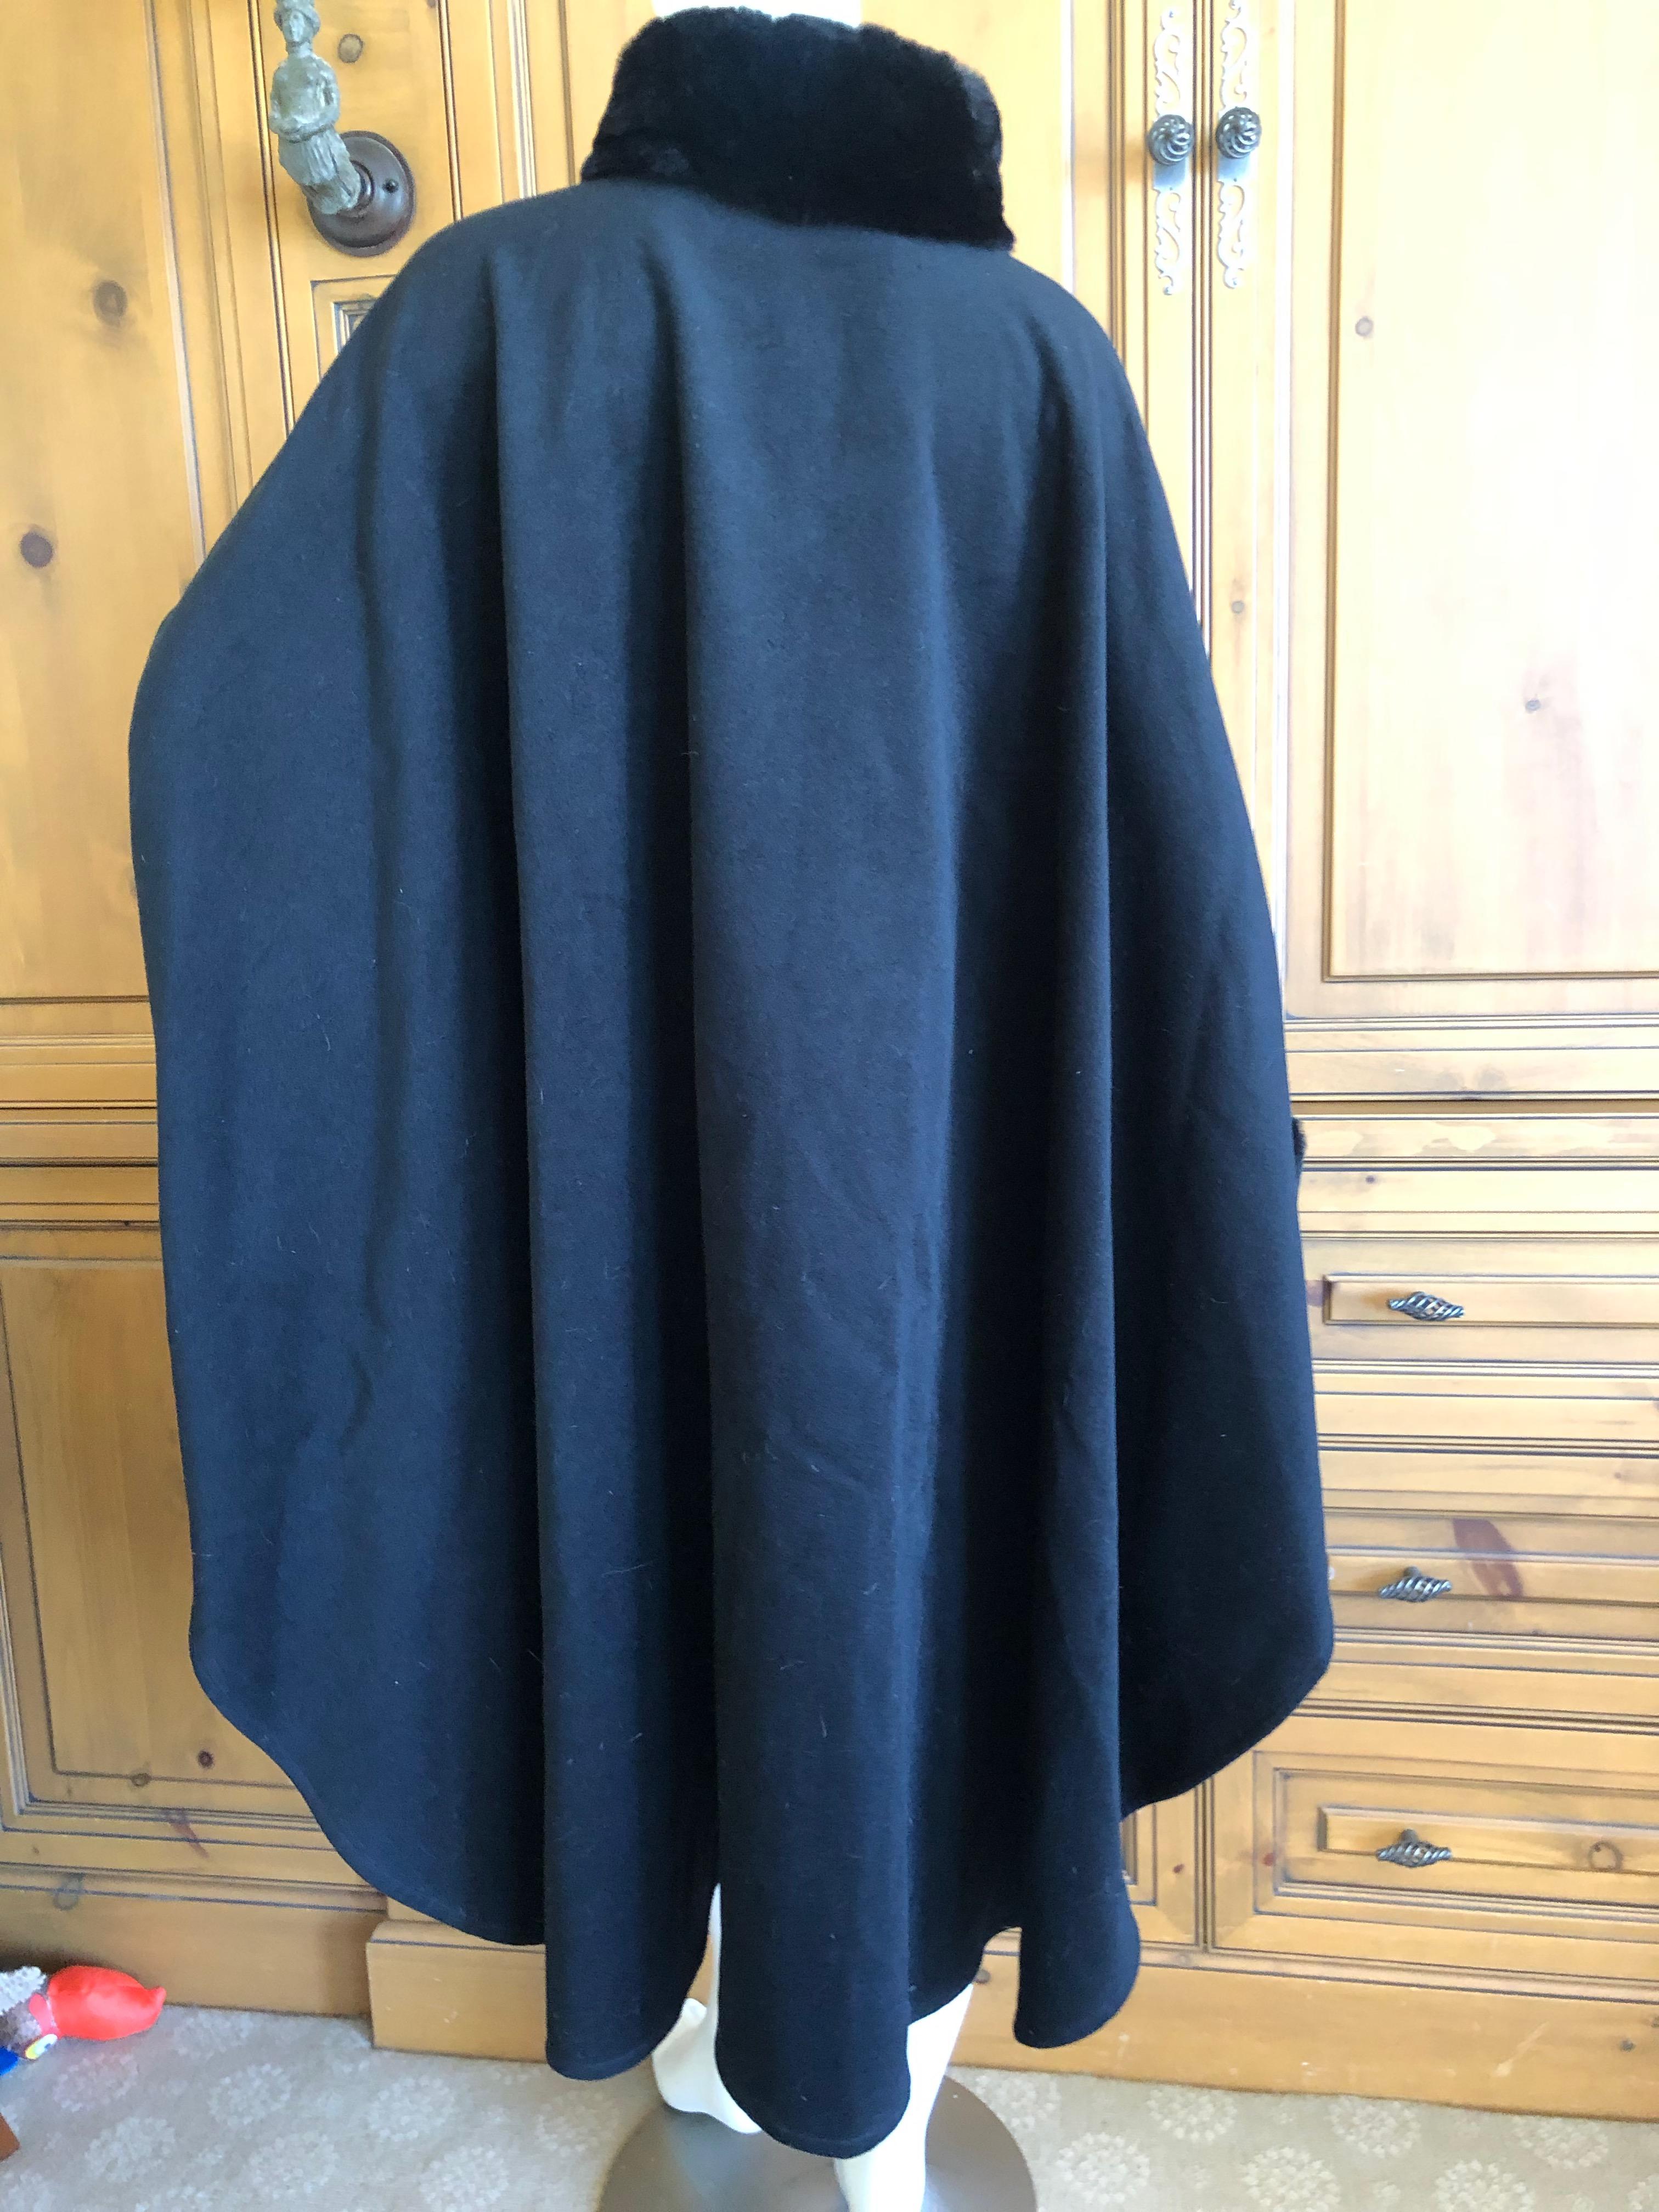 Yves Saint Laurent Fourrures Vintage Black Cashmere Cape w Fur Collars and Cuffs For Sale 2